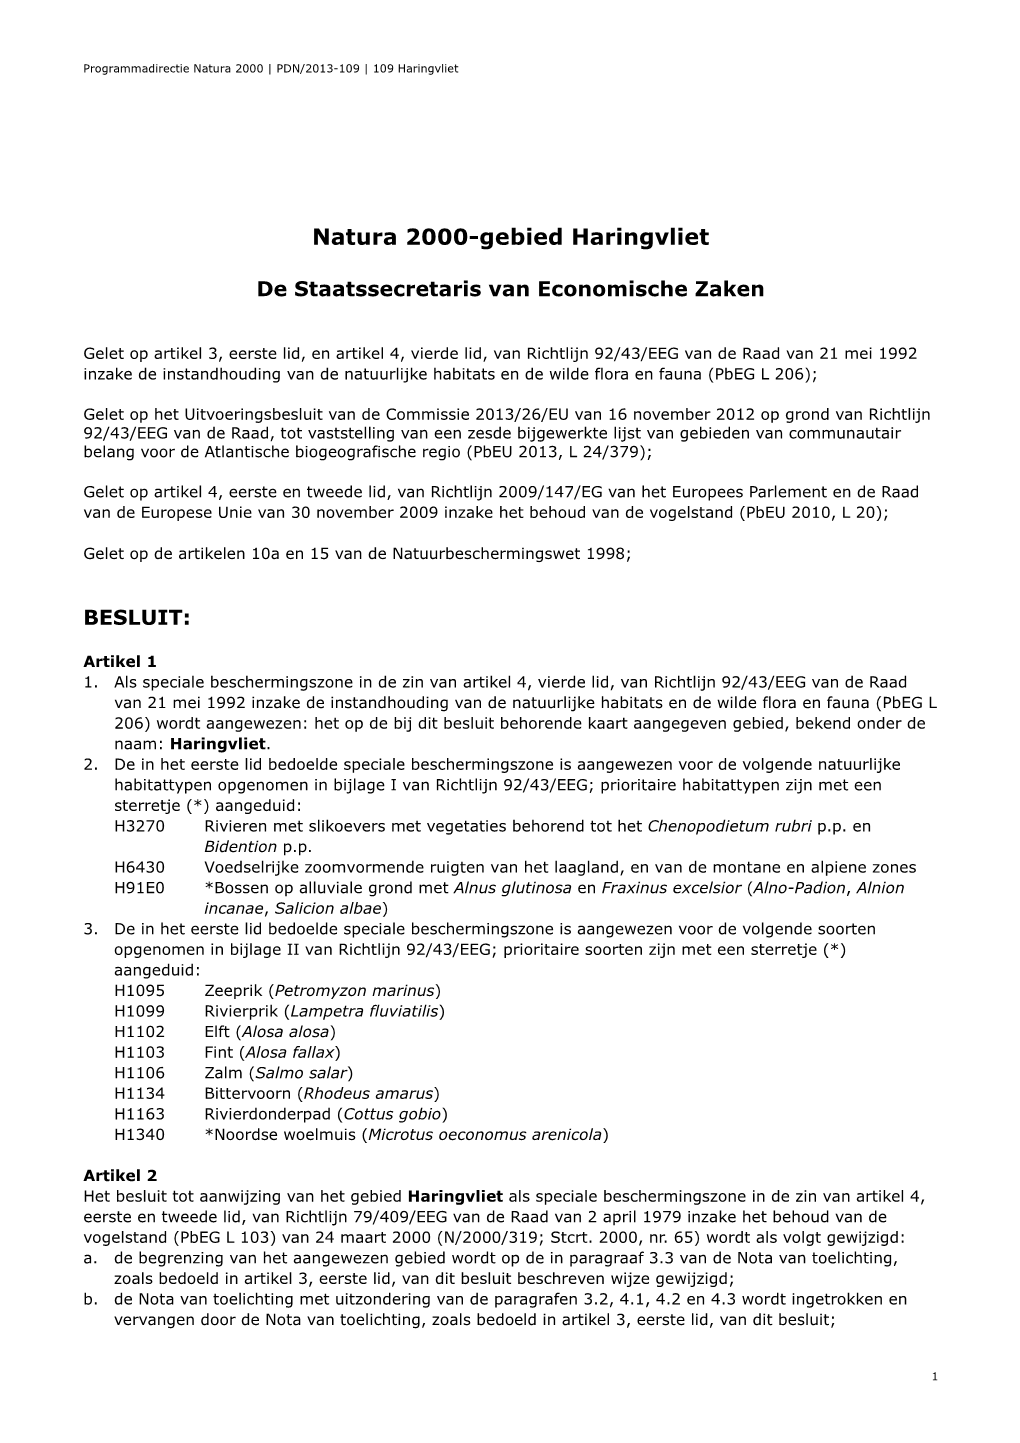 Besluit Natura 2000-Gebied Haringvliet (2013)